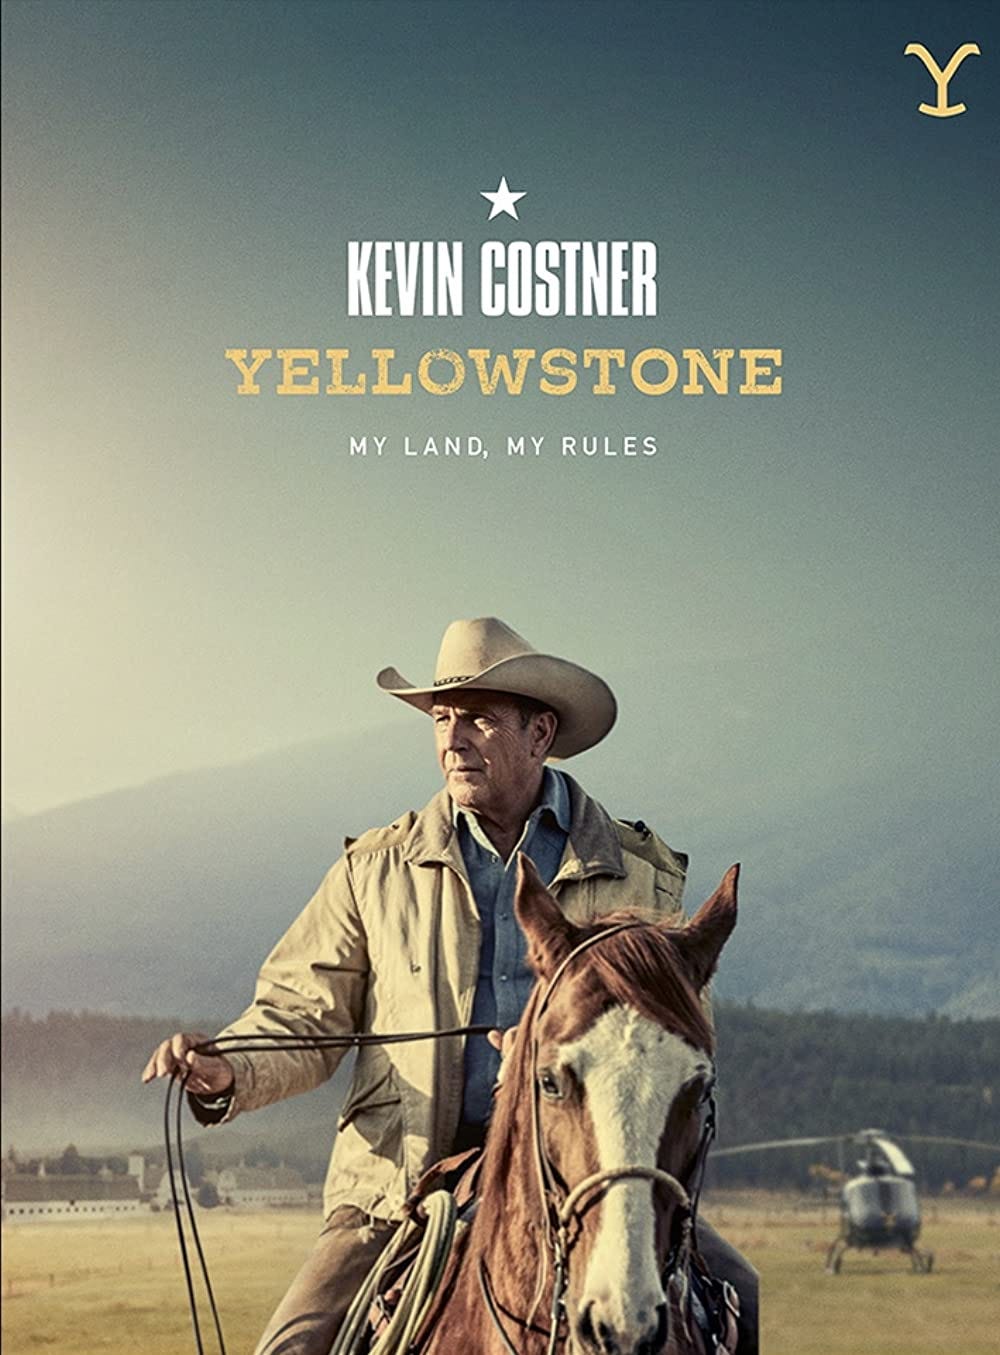 Yellowstone (TV Series 2018– ) - IMDb